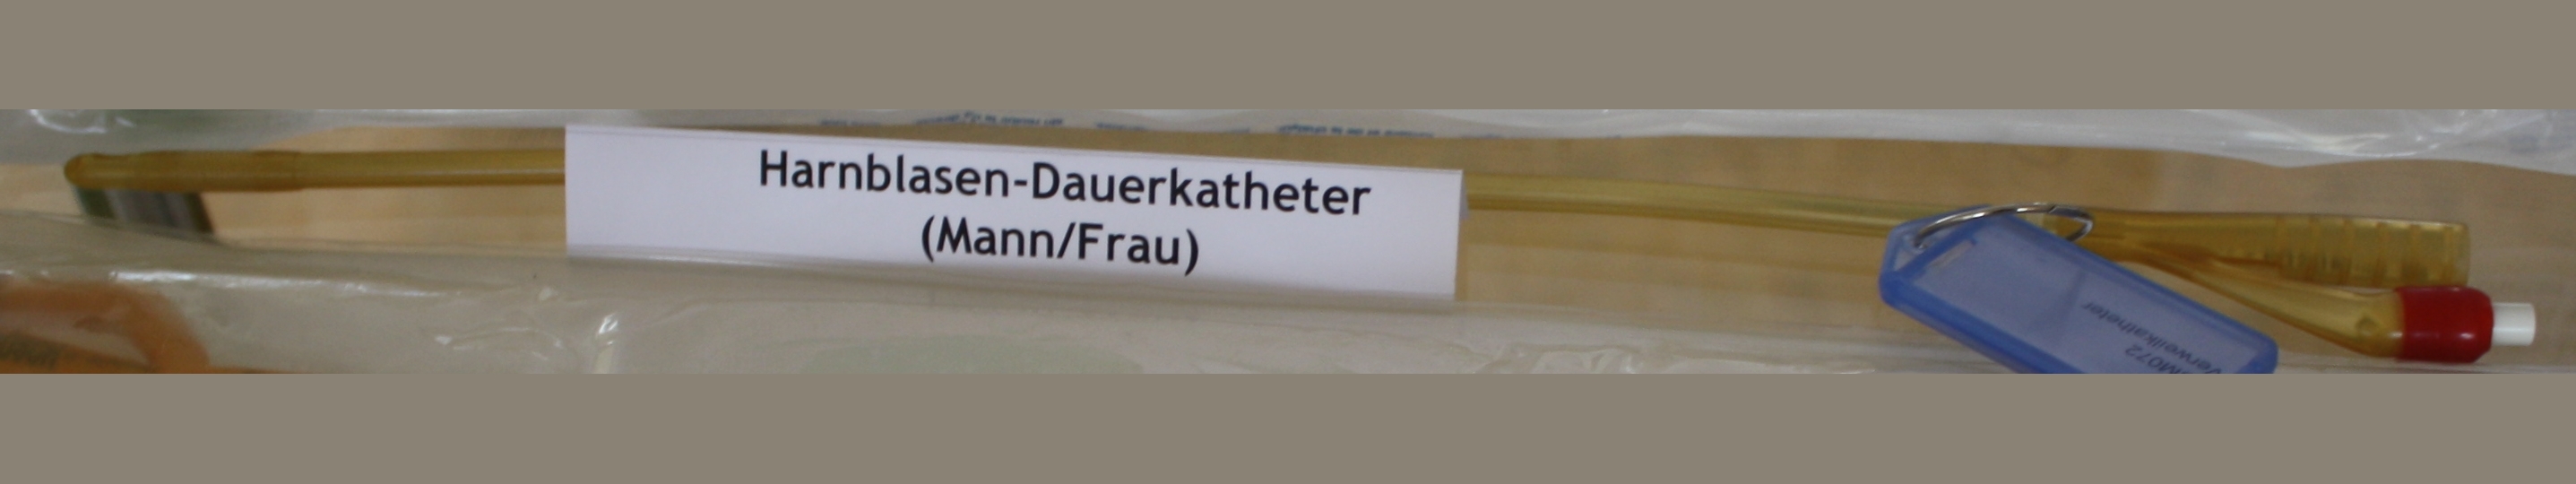 Harnblasen-Dauerkatheter (Mann/Frau) (Krankenhausmuseum Bielefeld e.V. CC BY-NC-SA)